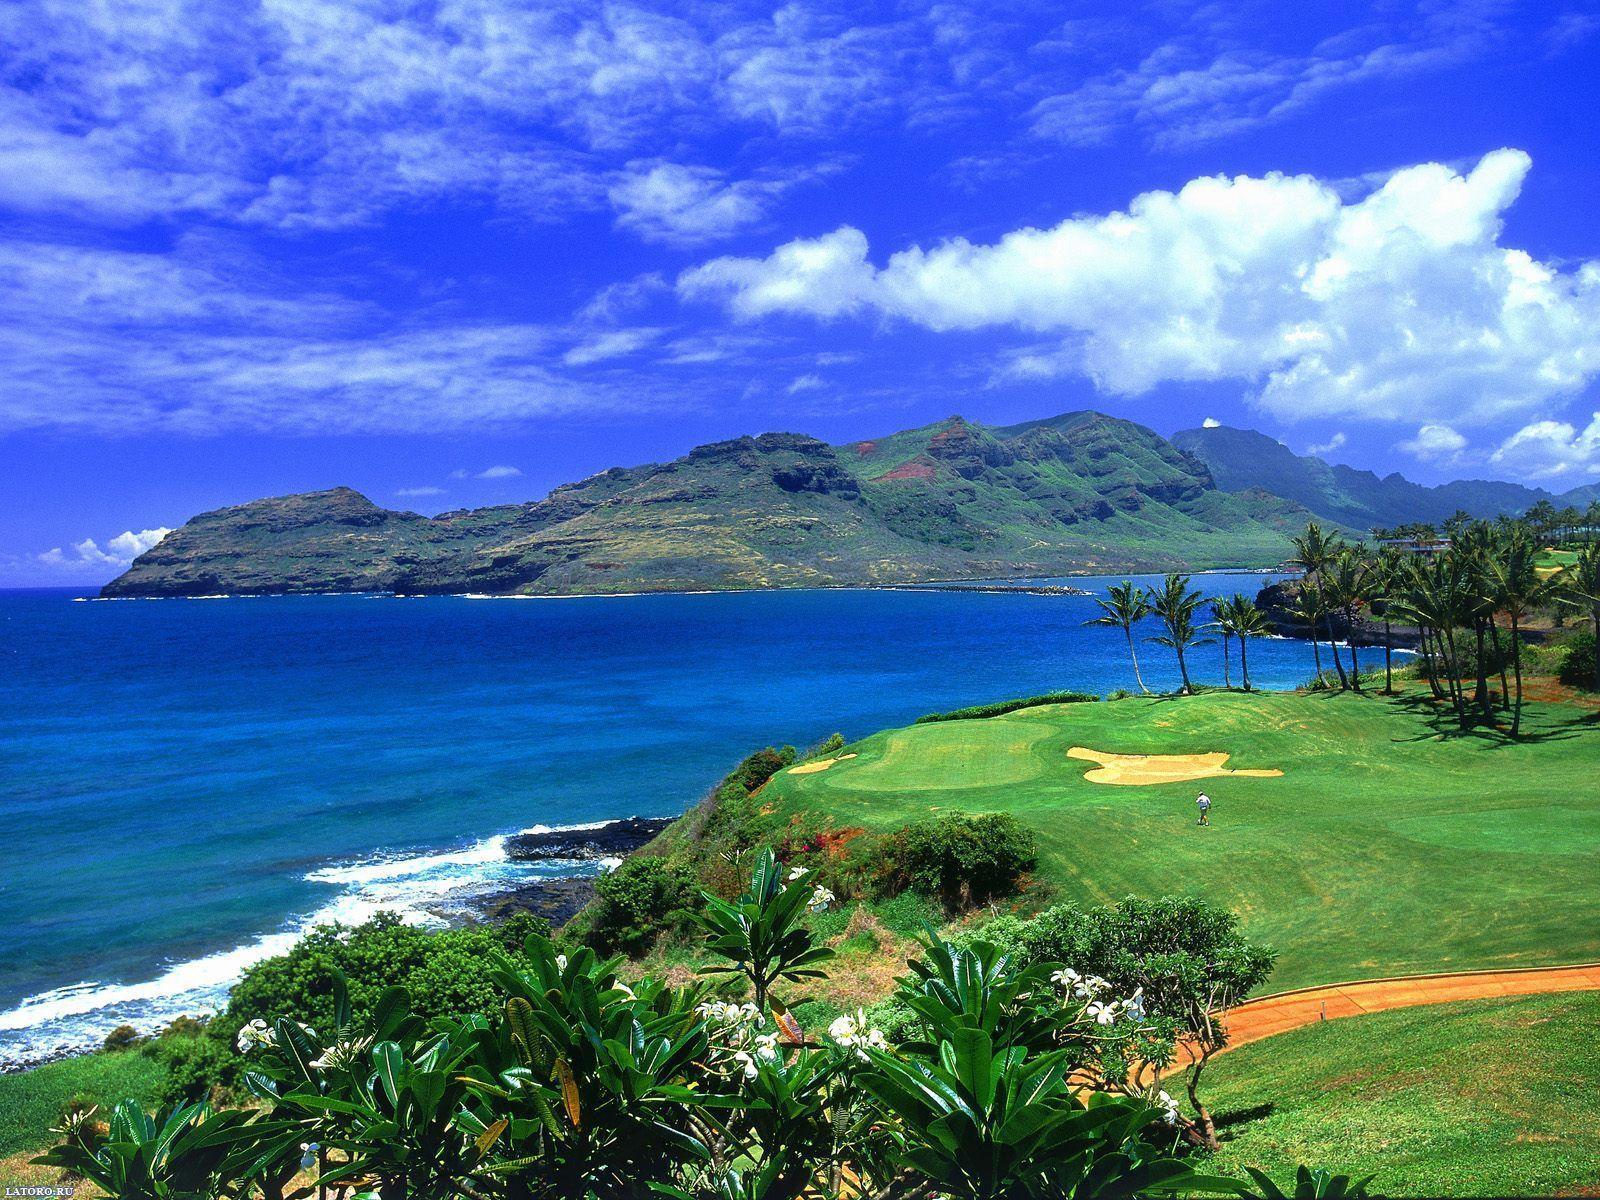 Hawaii Islands Wallpaper Background. vergapipe